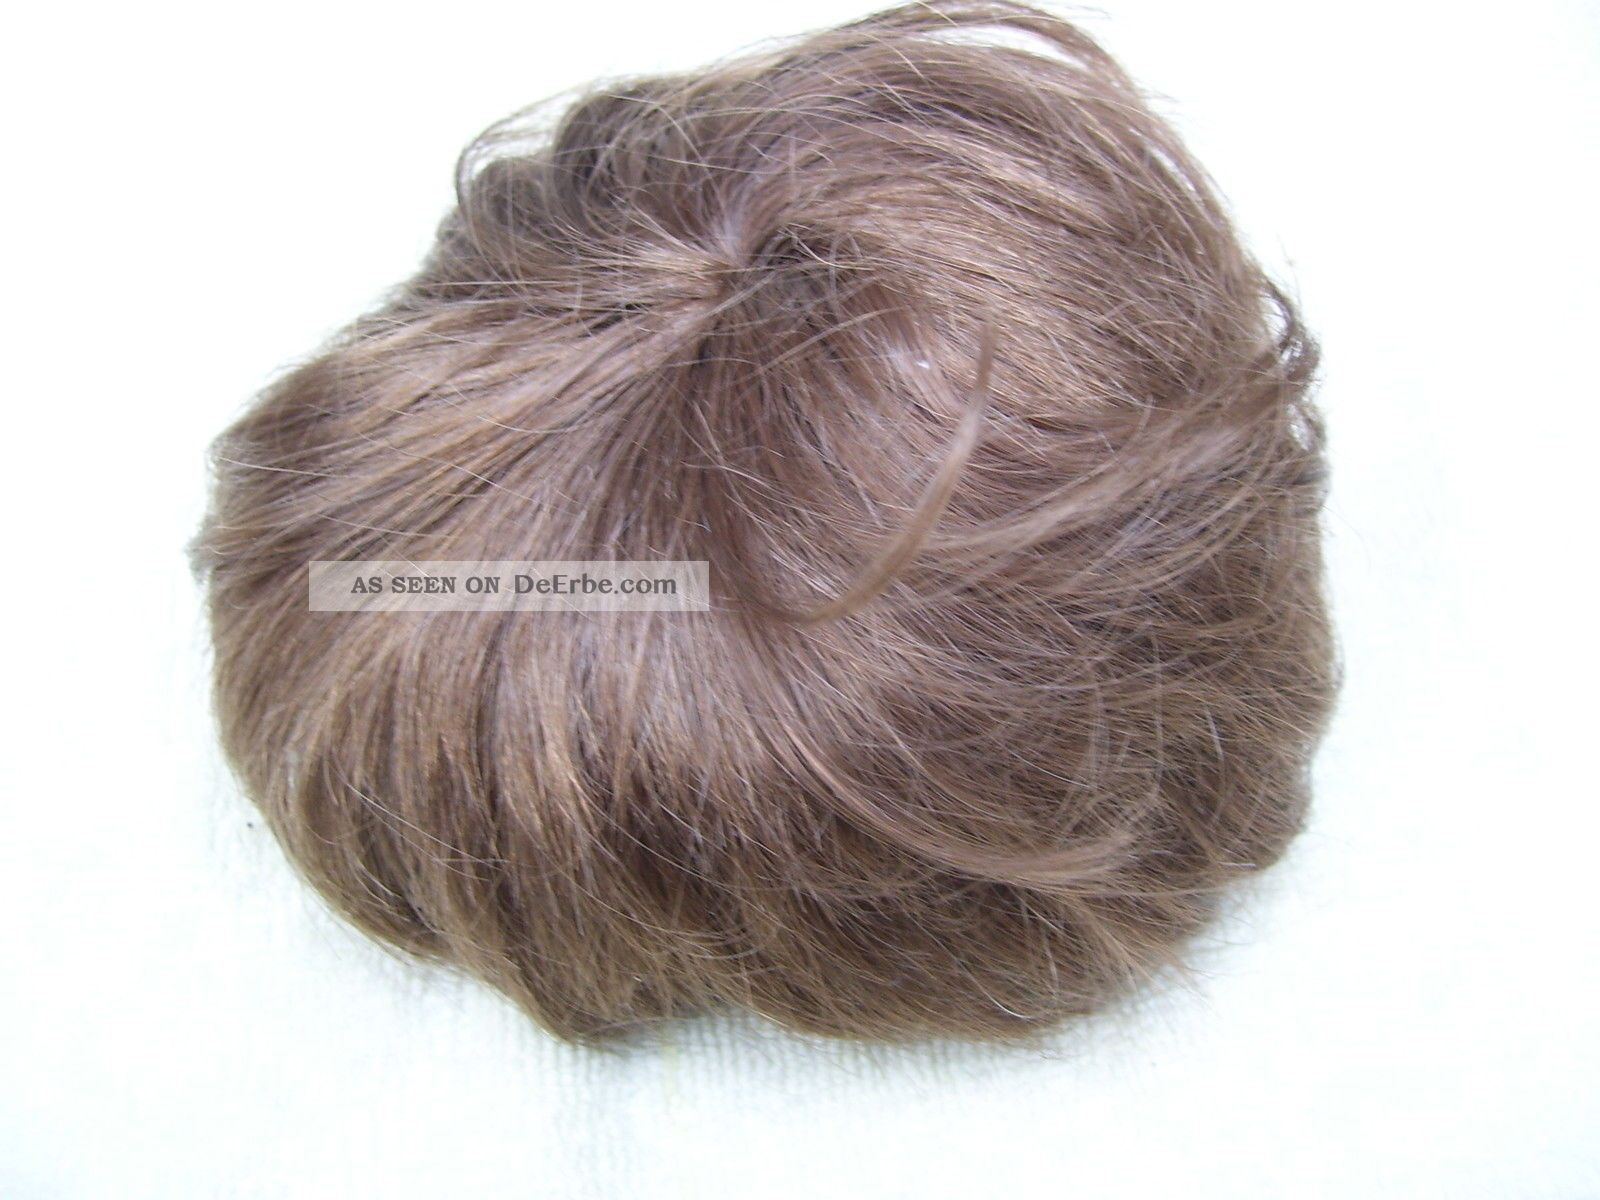 Alte Puppenteile Goldbraune Kurz Haar Perücke Vintage Doll Hair Wig 40 Cm Boy Puppen & Zubehör Bild